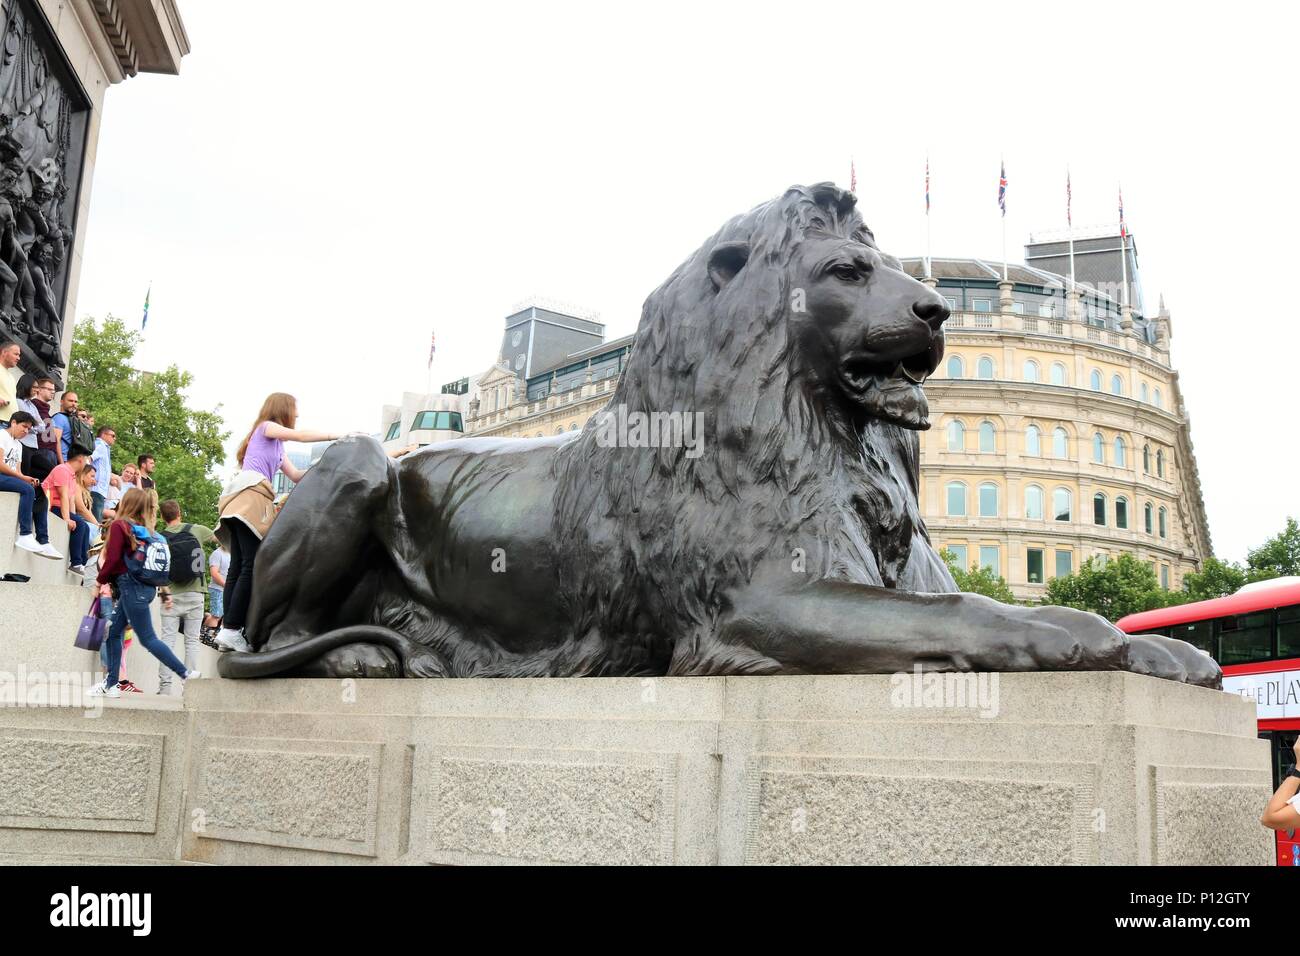 Les personnes bénéficiant du beau temps à Trafalgar Square, Londres, UK Banque D'Images